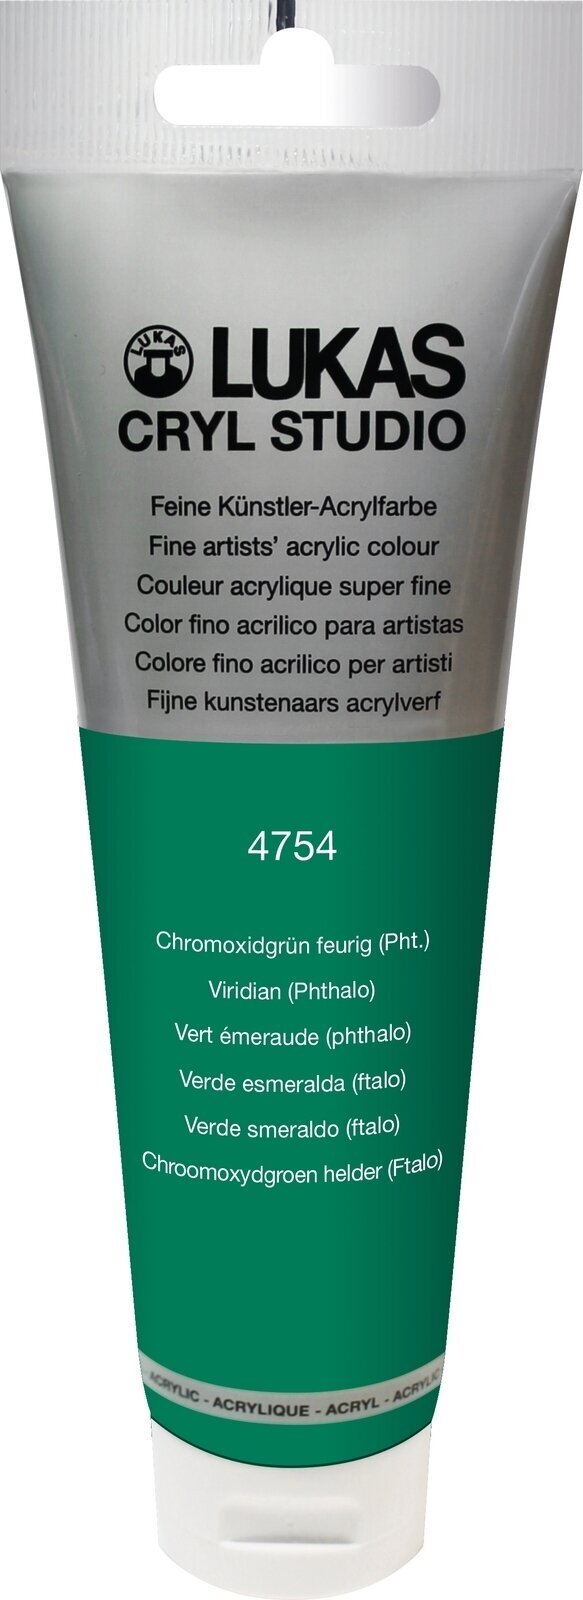 Tinta acrílica Lukas Cryl Studio Acrylic Paint Plastic Tube Tinta acrílica Viridian (Phthalo) 125 ml 1 un.